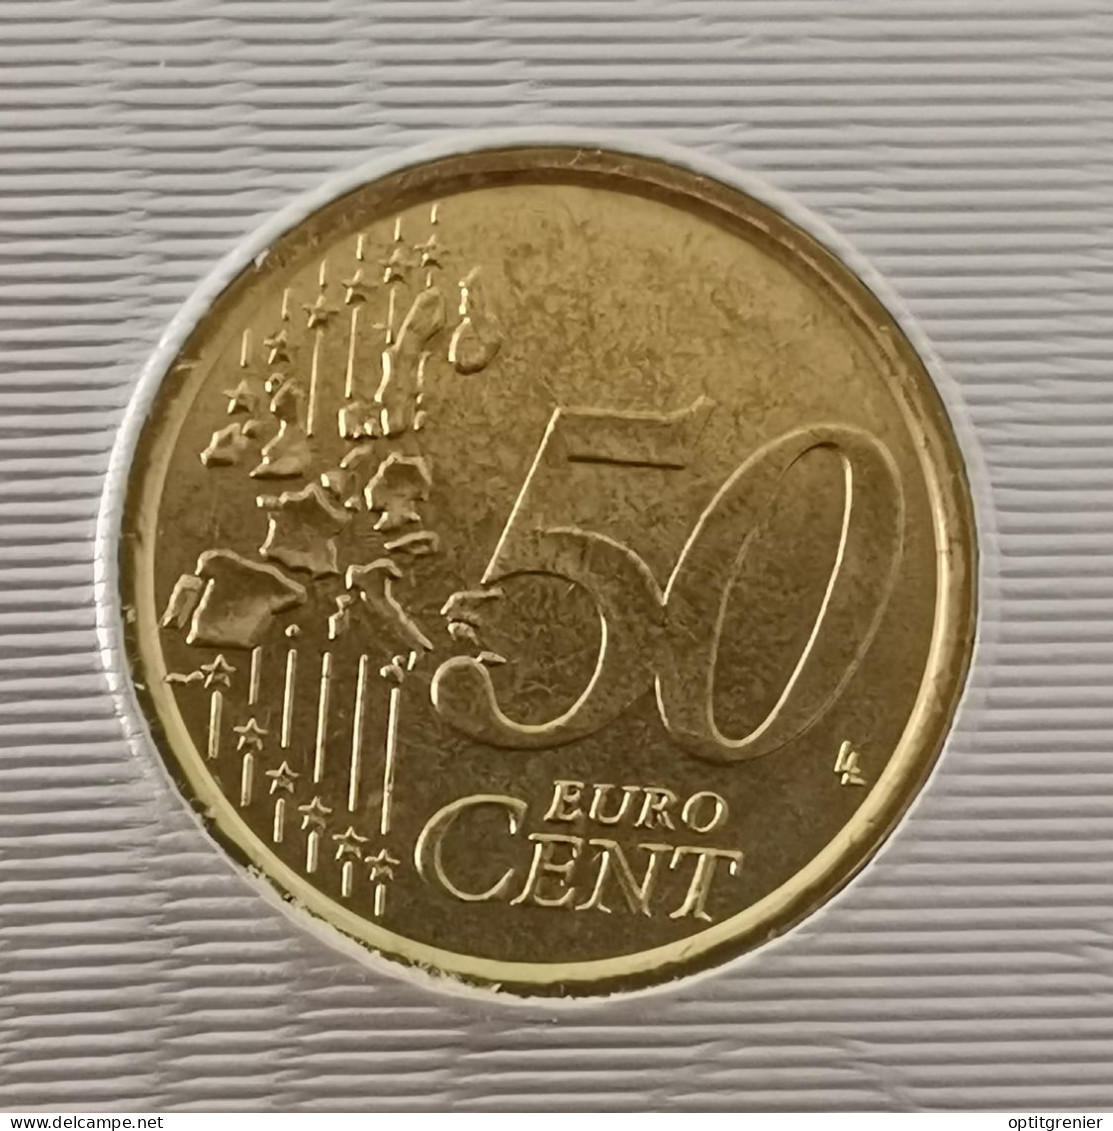 50 EURO CENT VATICAN 2006 / ISSUE DU COFFRET / VATICANO EURO CENTS (UN PEU "SALE") - Vatikan